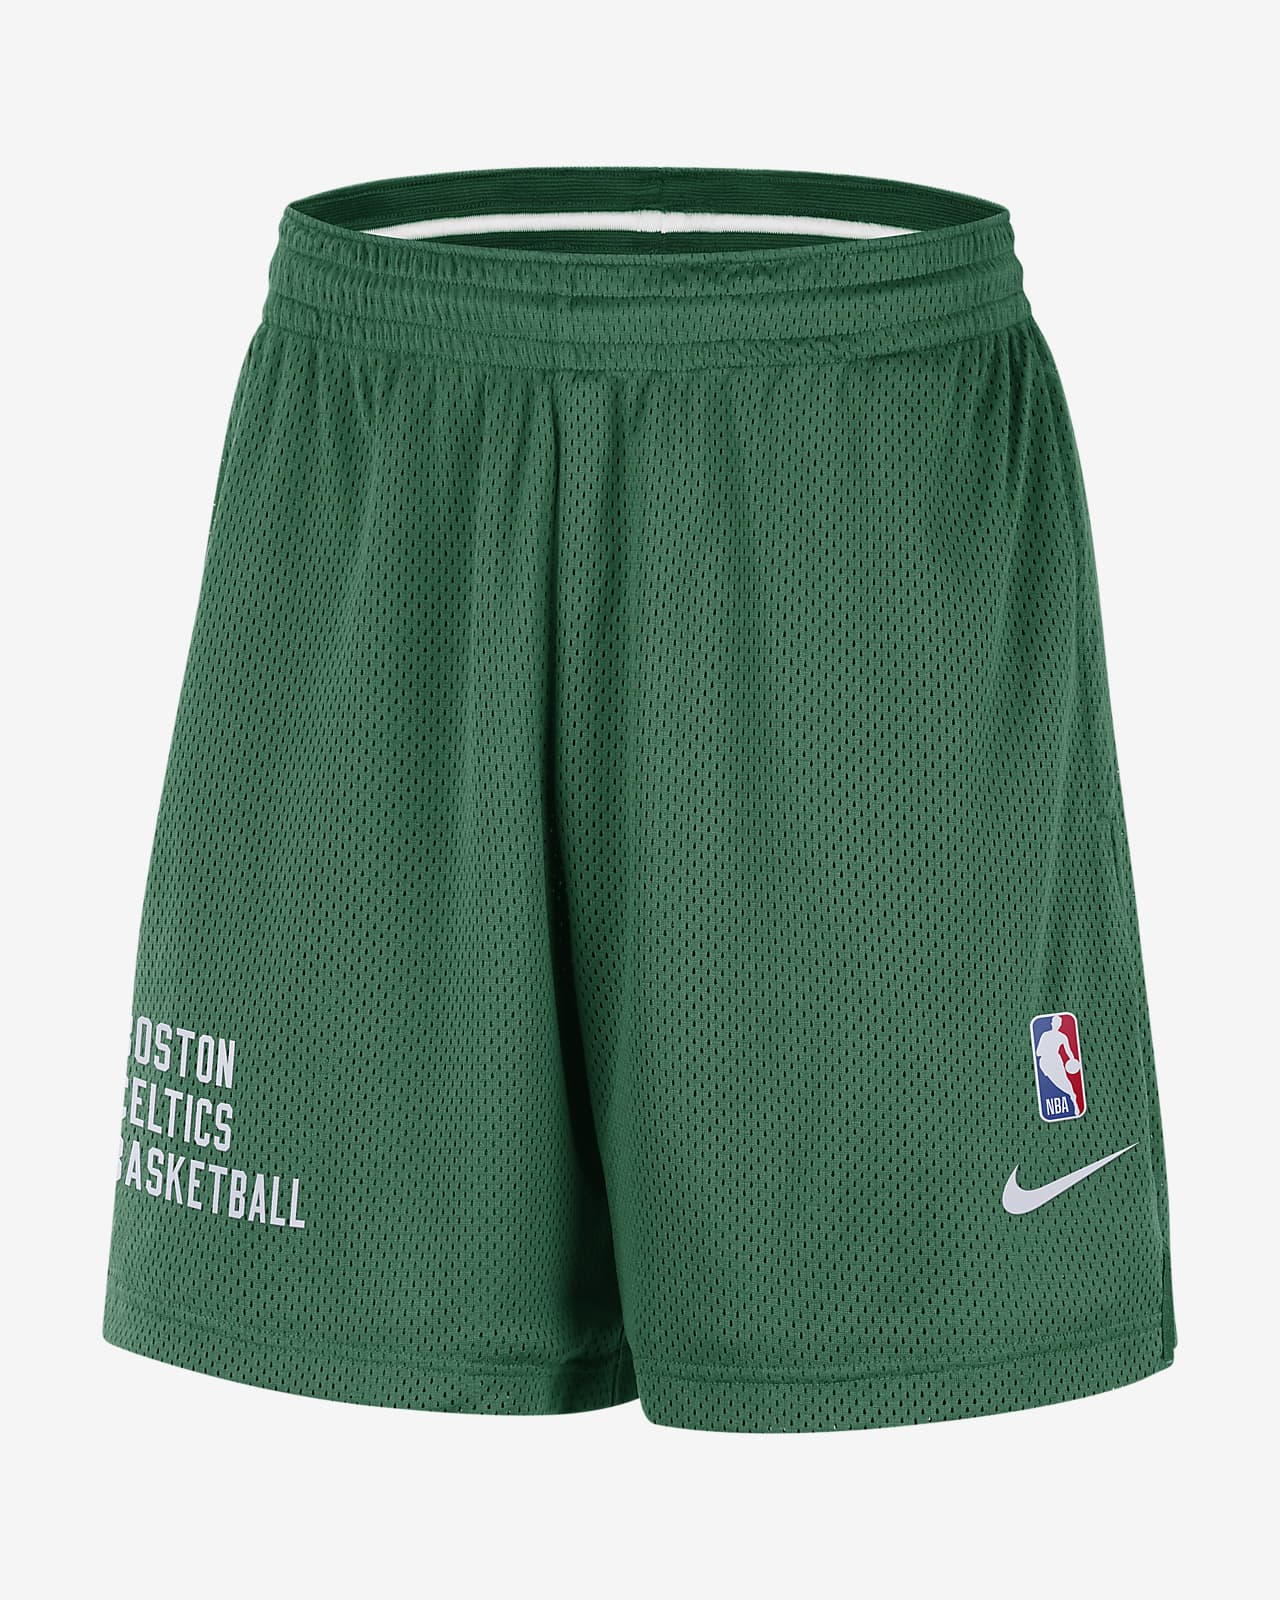 Nike Men's Boston Celtics Green Mesh Shorts, XL